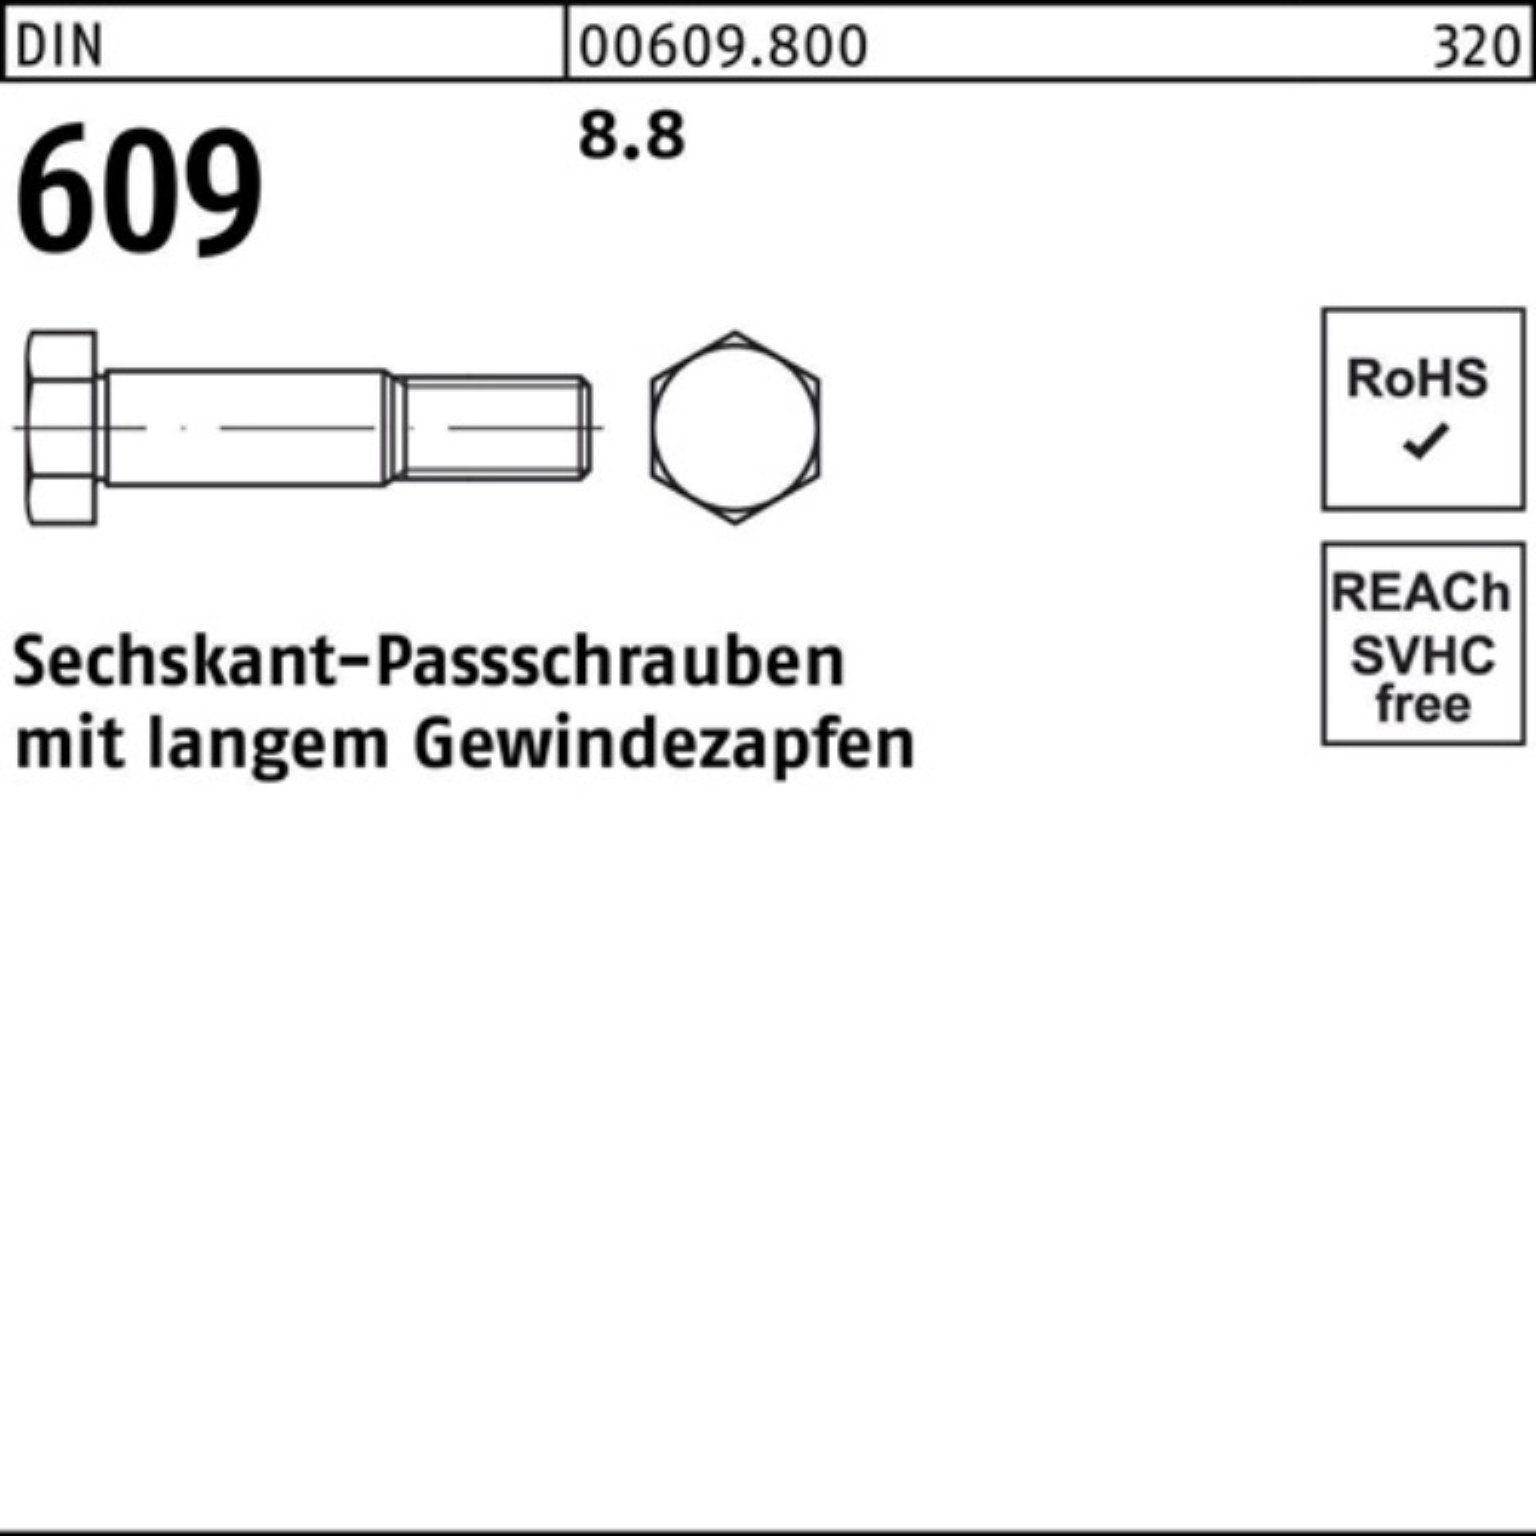 Sechskantpassschraube Pack 130 100er DIN langem Schraube Gewindezapfen M36x Reyher 609